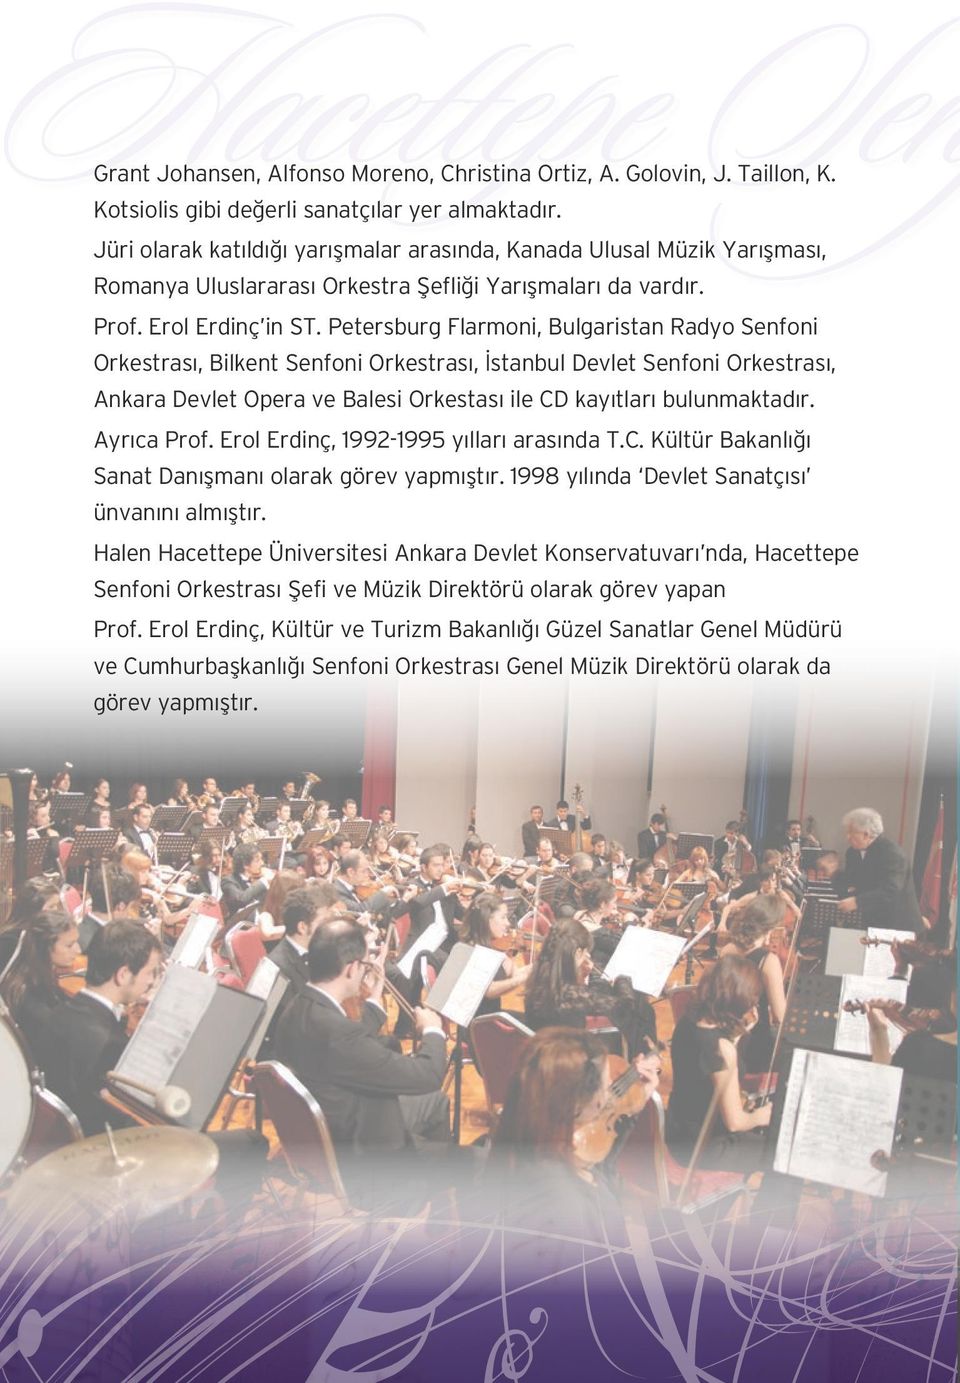 Petersburg Flarmoni, Bulgaristan Radyo Senfoni Orkestrası, Bilkent Senfoni Orkestrası, İstanbul Devlet Senfoni Orkestrası, Ankara Devlet Opera ve Balesi Orkestası ile CD kayıtları bulunmaktadır.